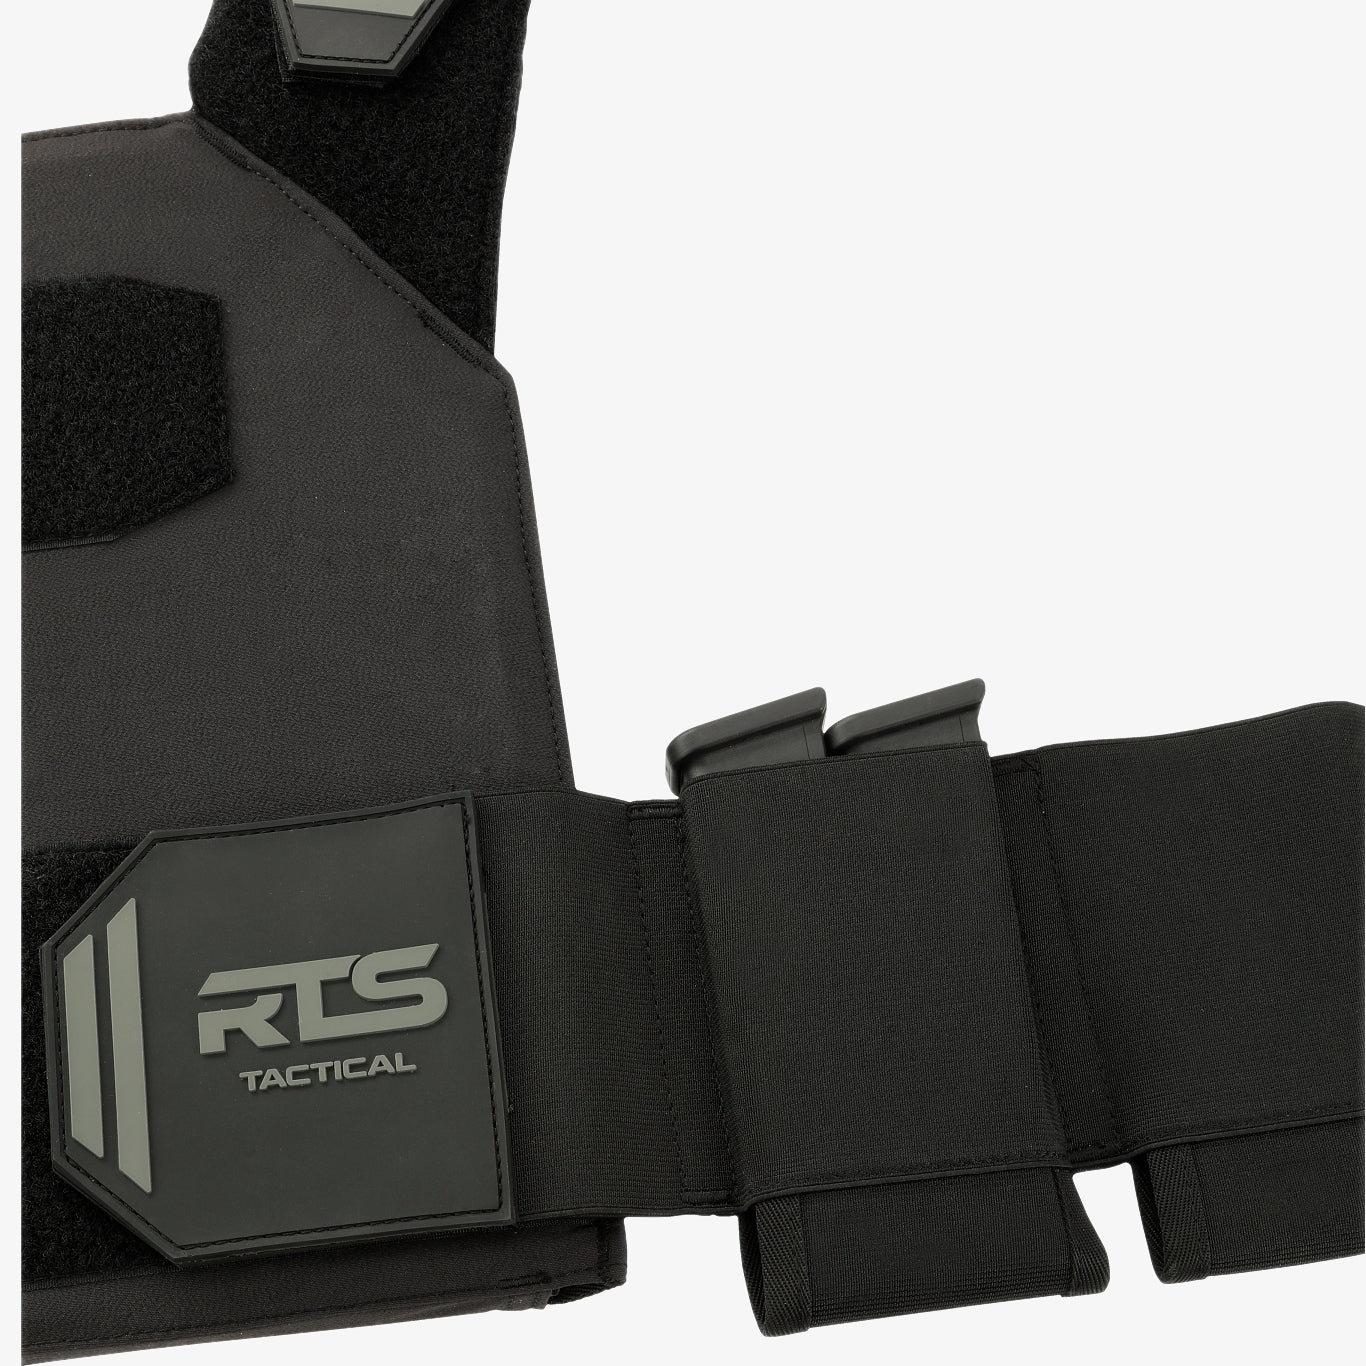 RTS Tactical Advanced Sleek 2.0 Level IIIA Soft Armor